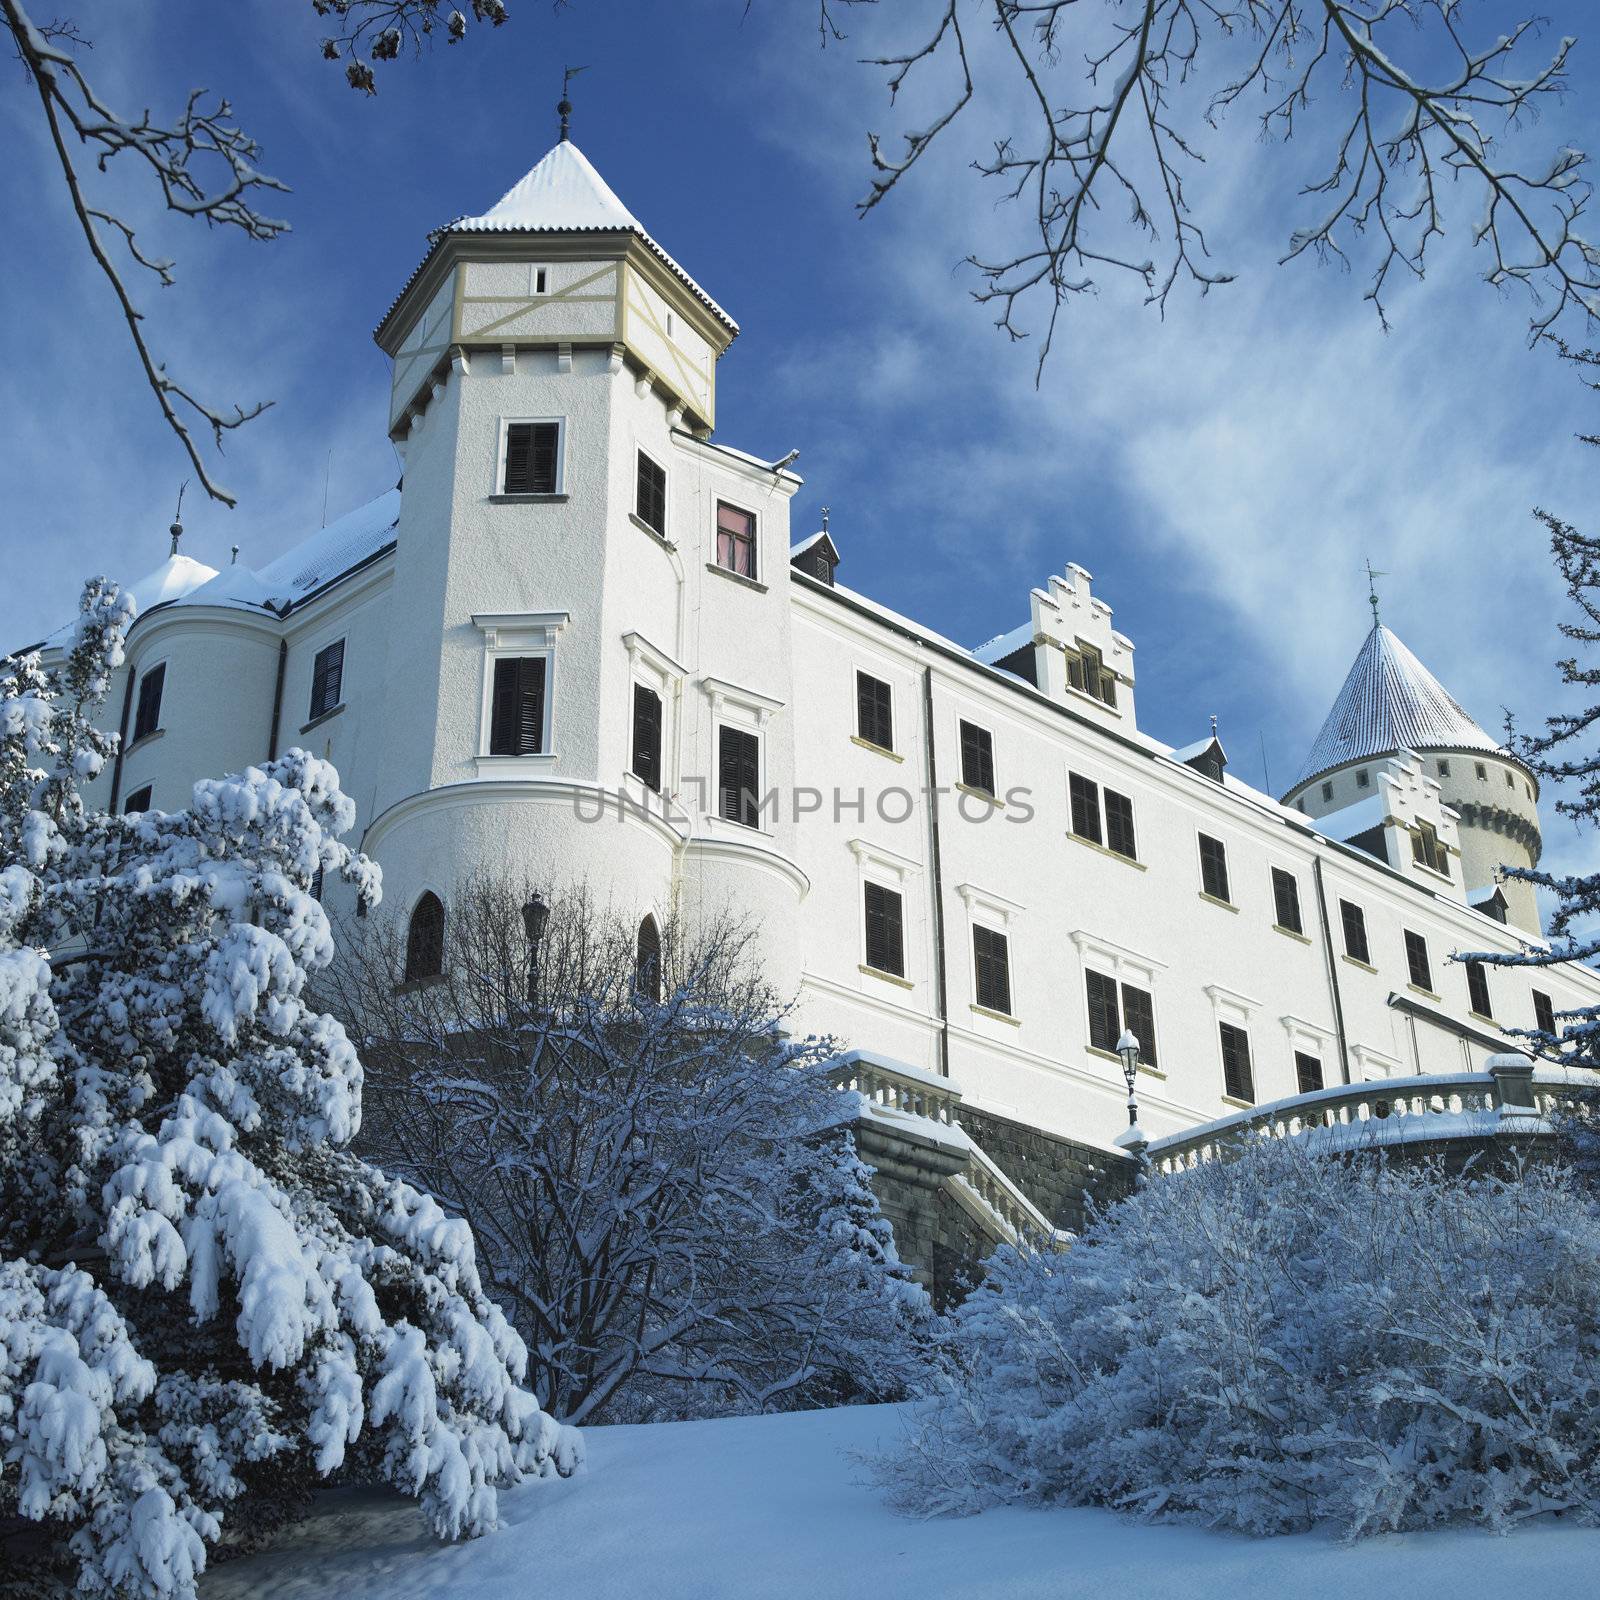 Konopiste Chateau in winter, Czech Republic by phbcz